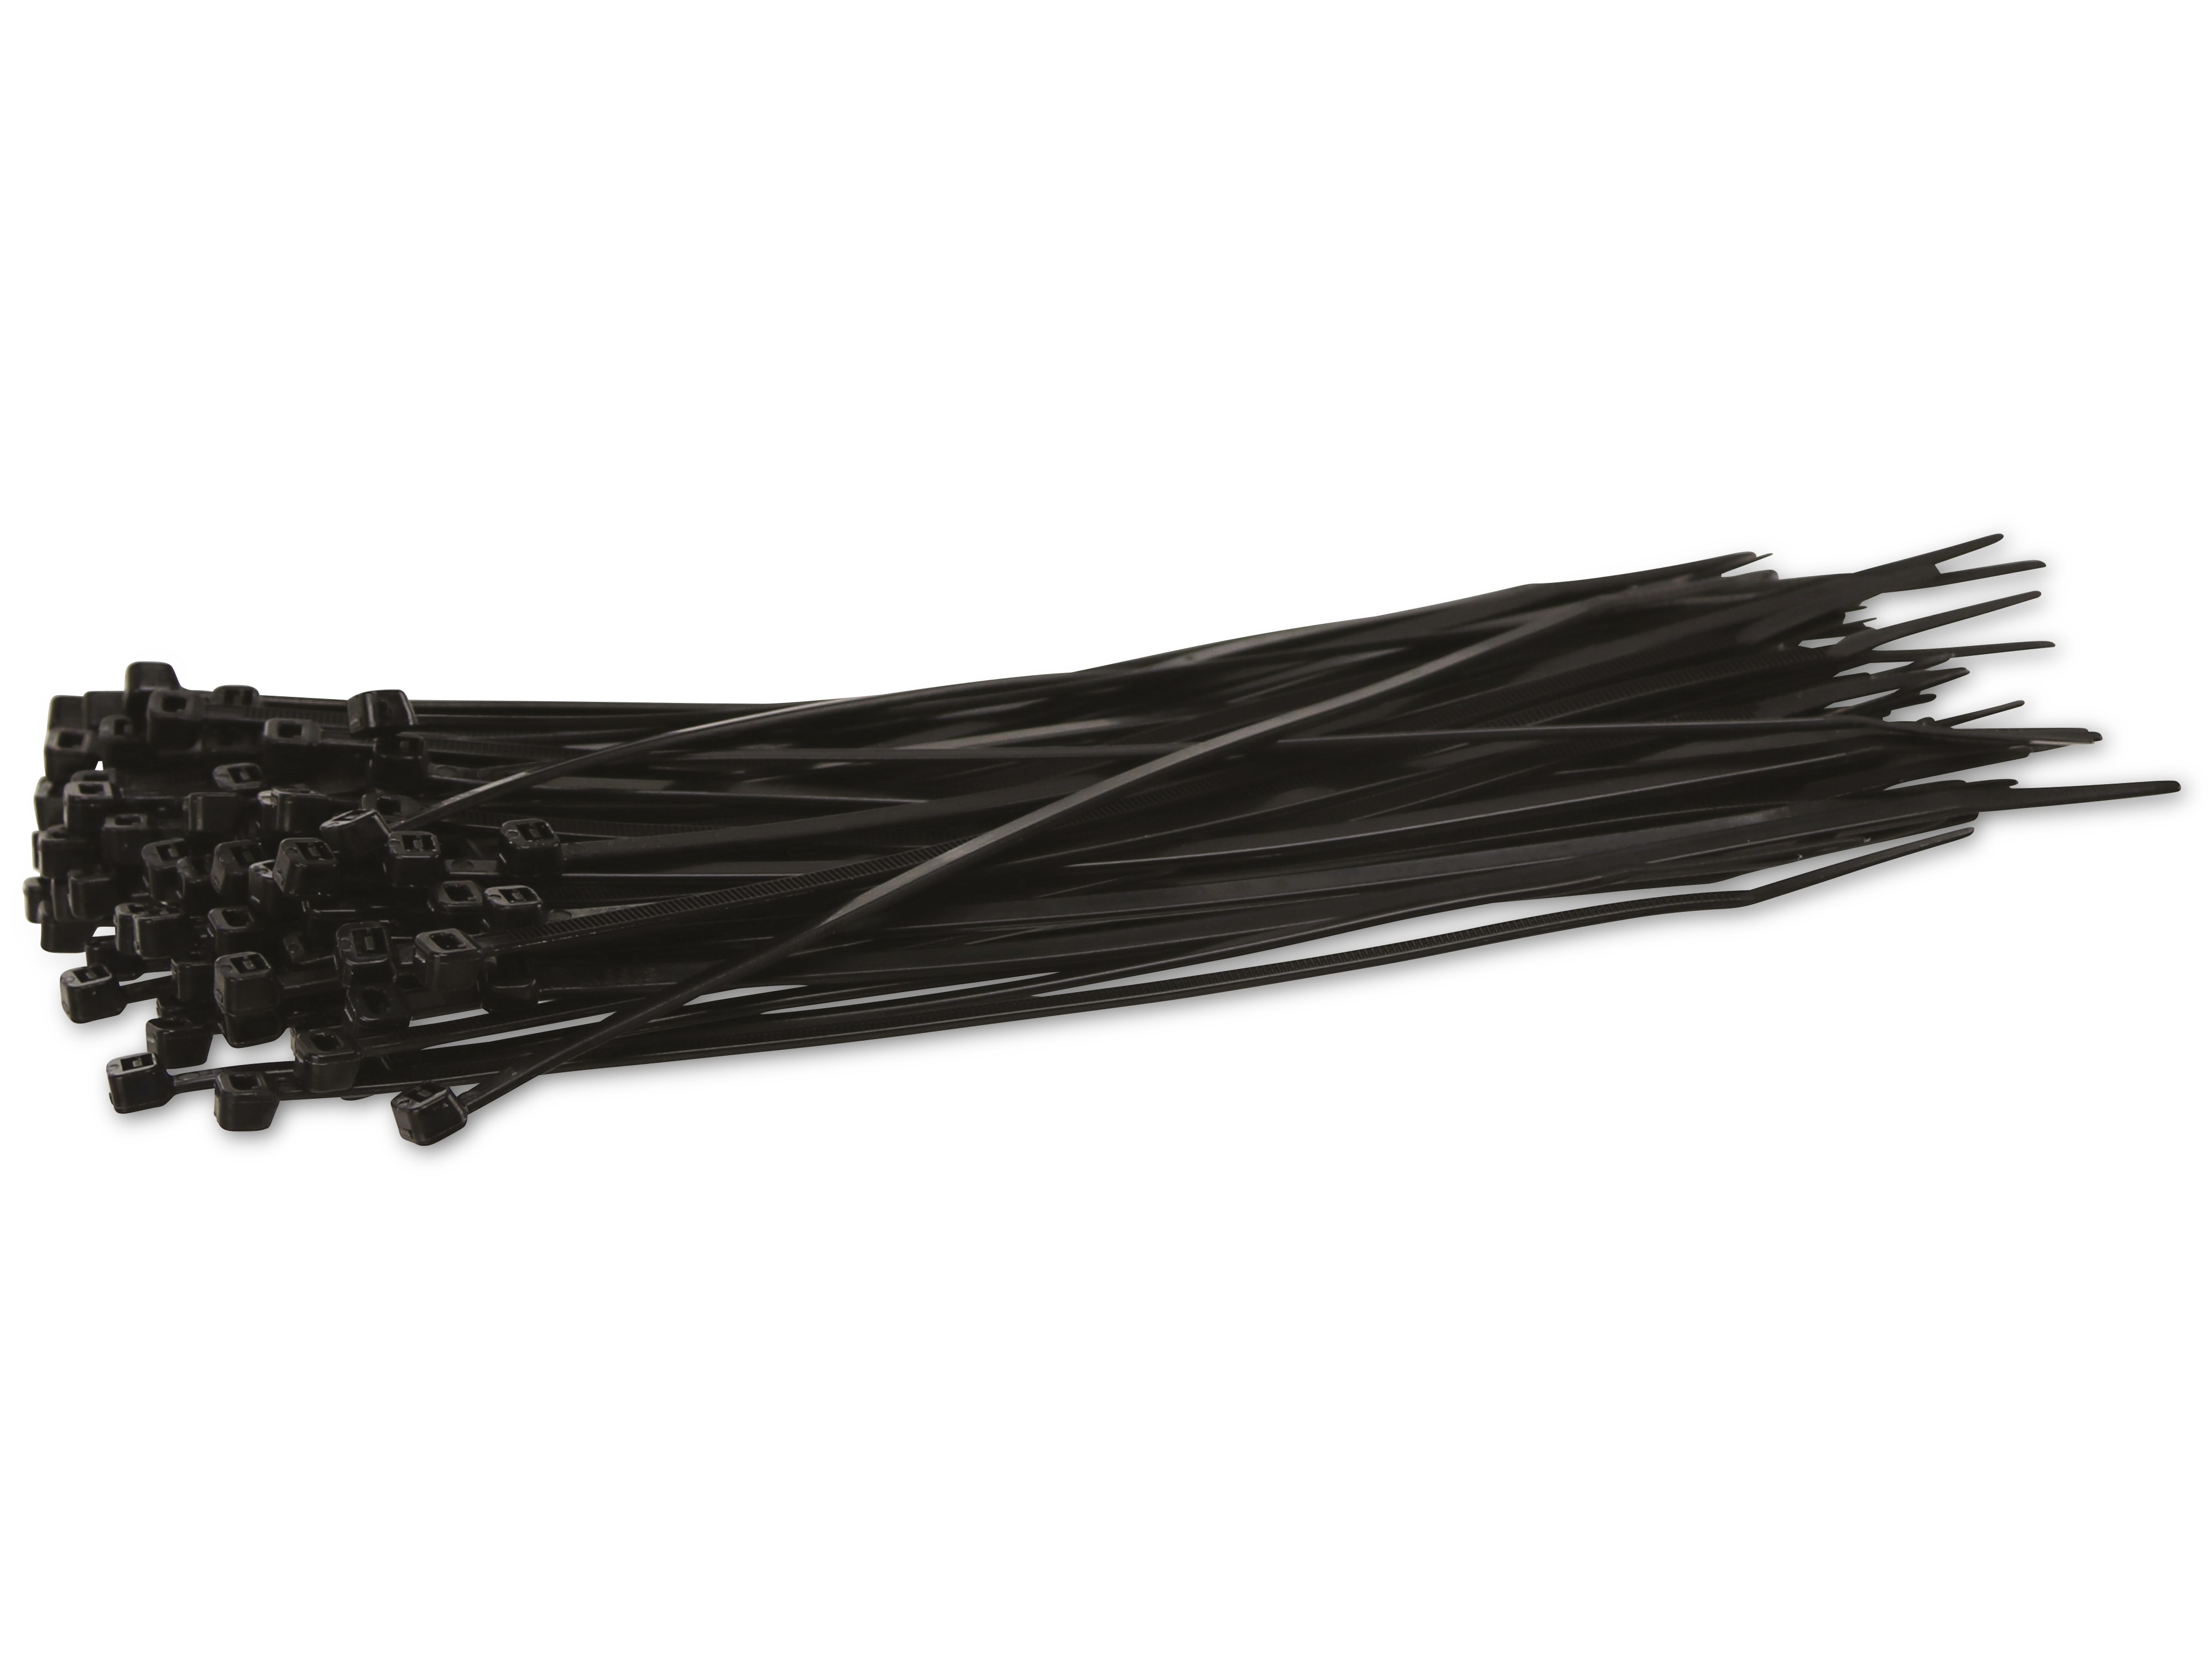 KSS Kabelbinder-Sortiment Polyamid 6.6, schwarz, 203x3,6, UV-beständig, 100 Stück